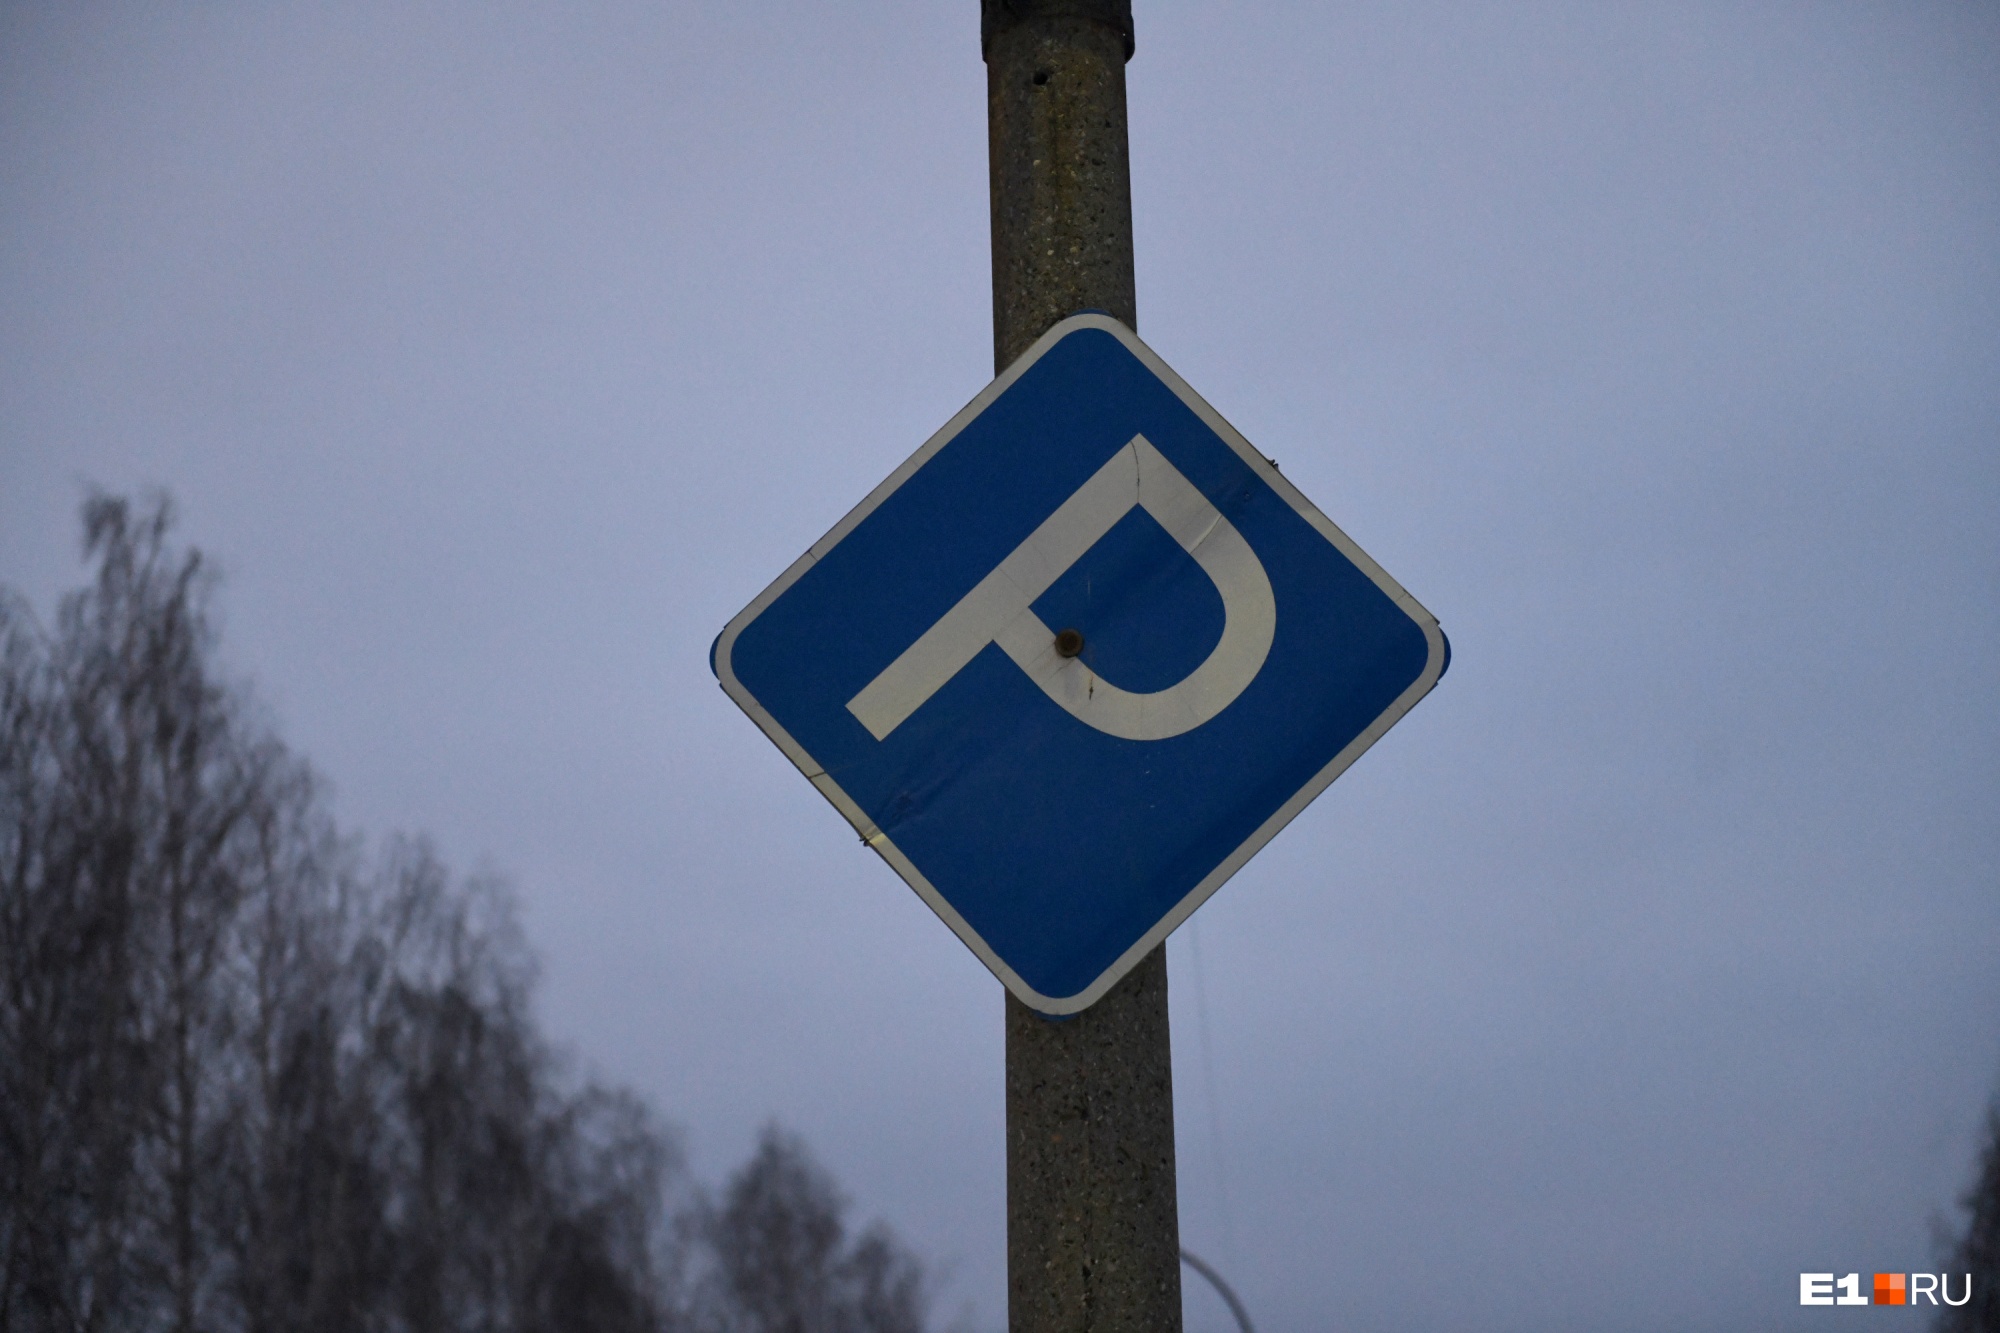 Мэрия Екатеринбурга объявила войну незаконным парковкам. Рассказываем, как она избавится от нелегалов